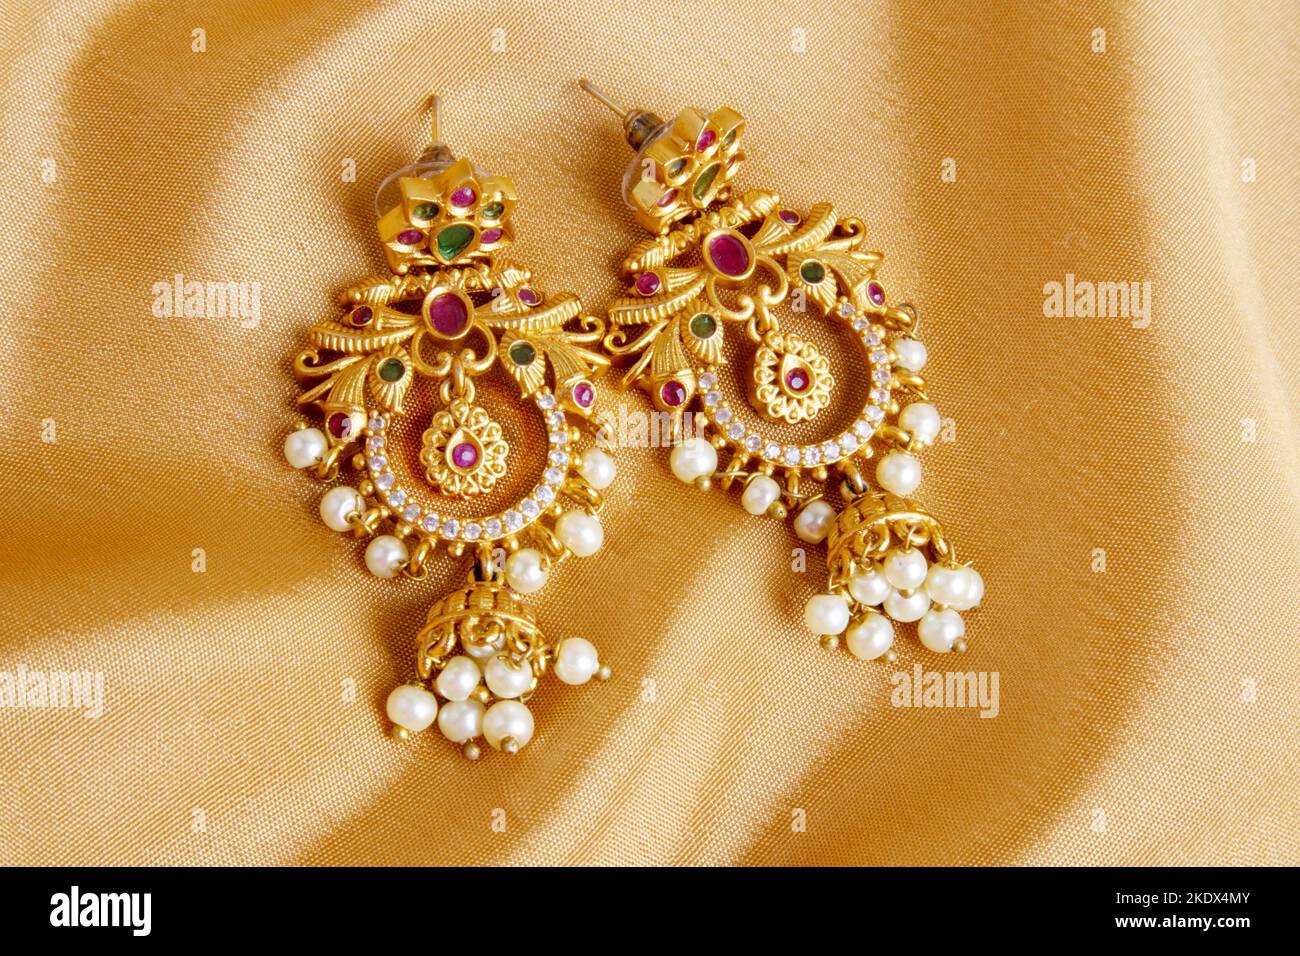 Buy Qwerky Nest Alloy Hoop, Zircon Butterfly Design, Pearl Stud Earrings,  Flower Chand Bali Earrings for Women, Stone Bali Type Earrings (Pack of 1,  Golden) at Amazon.in